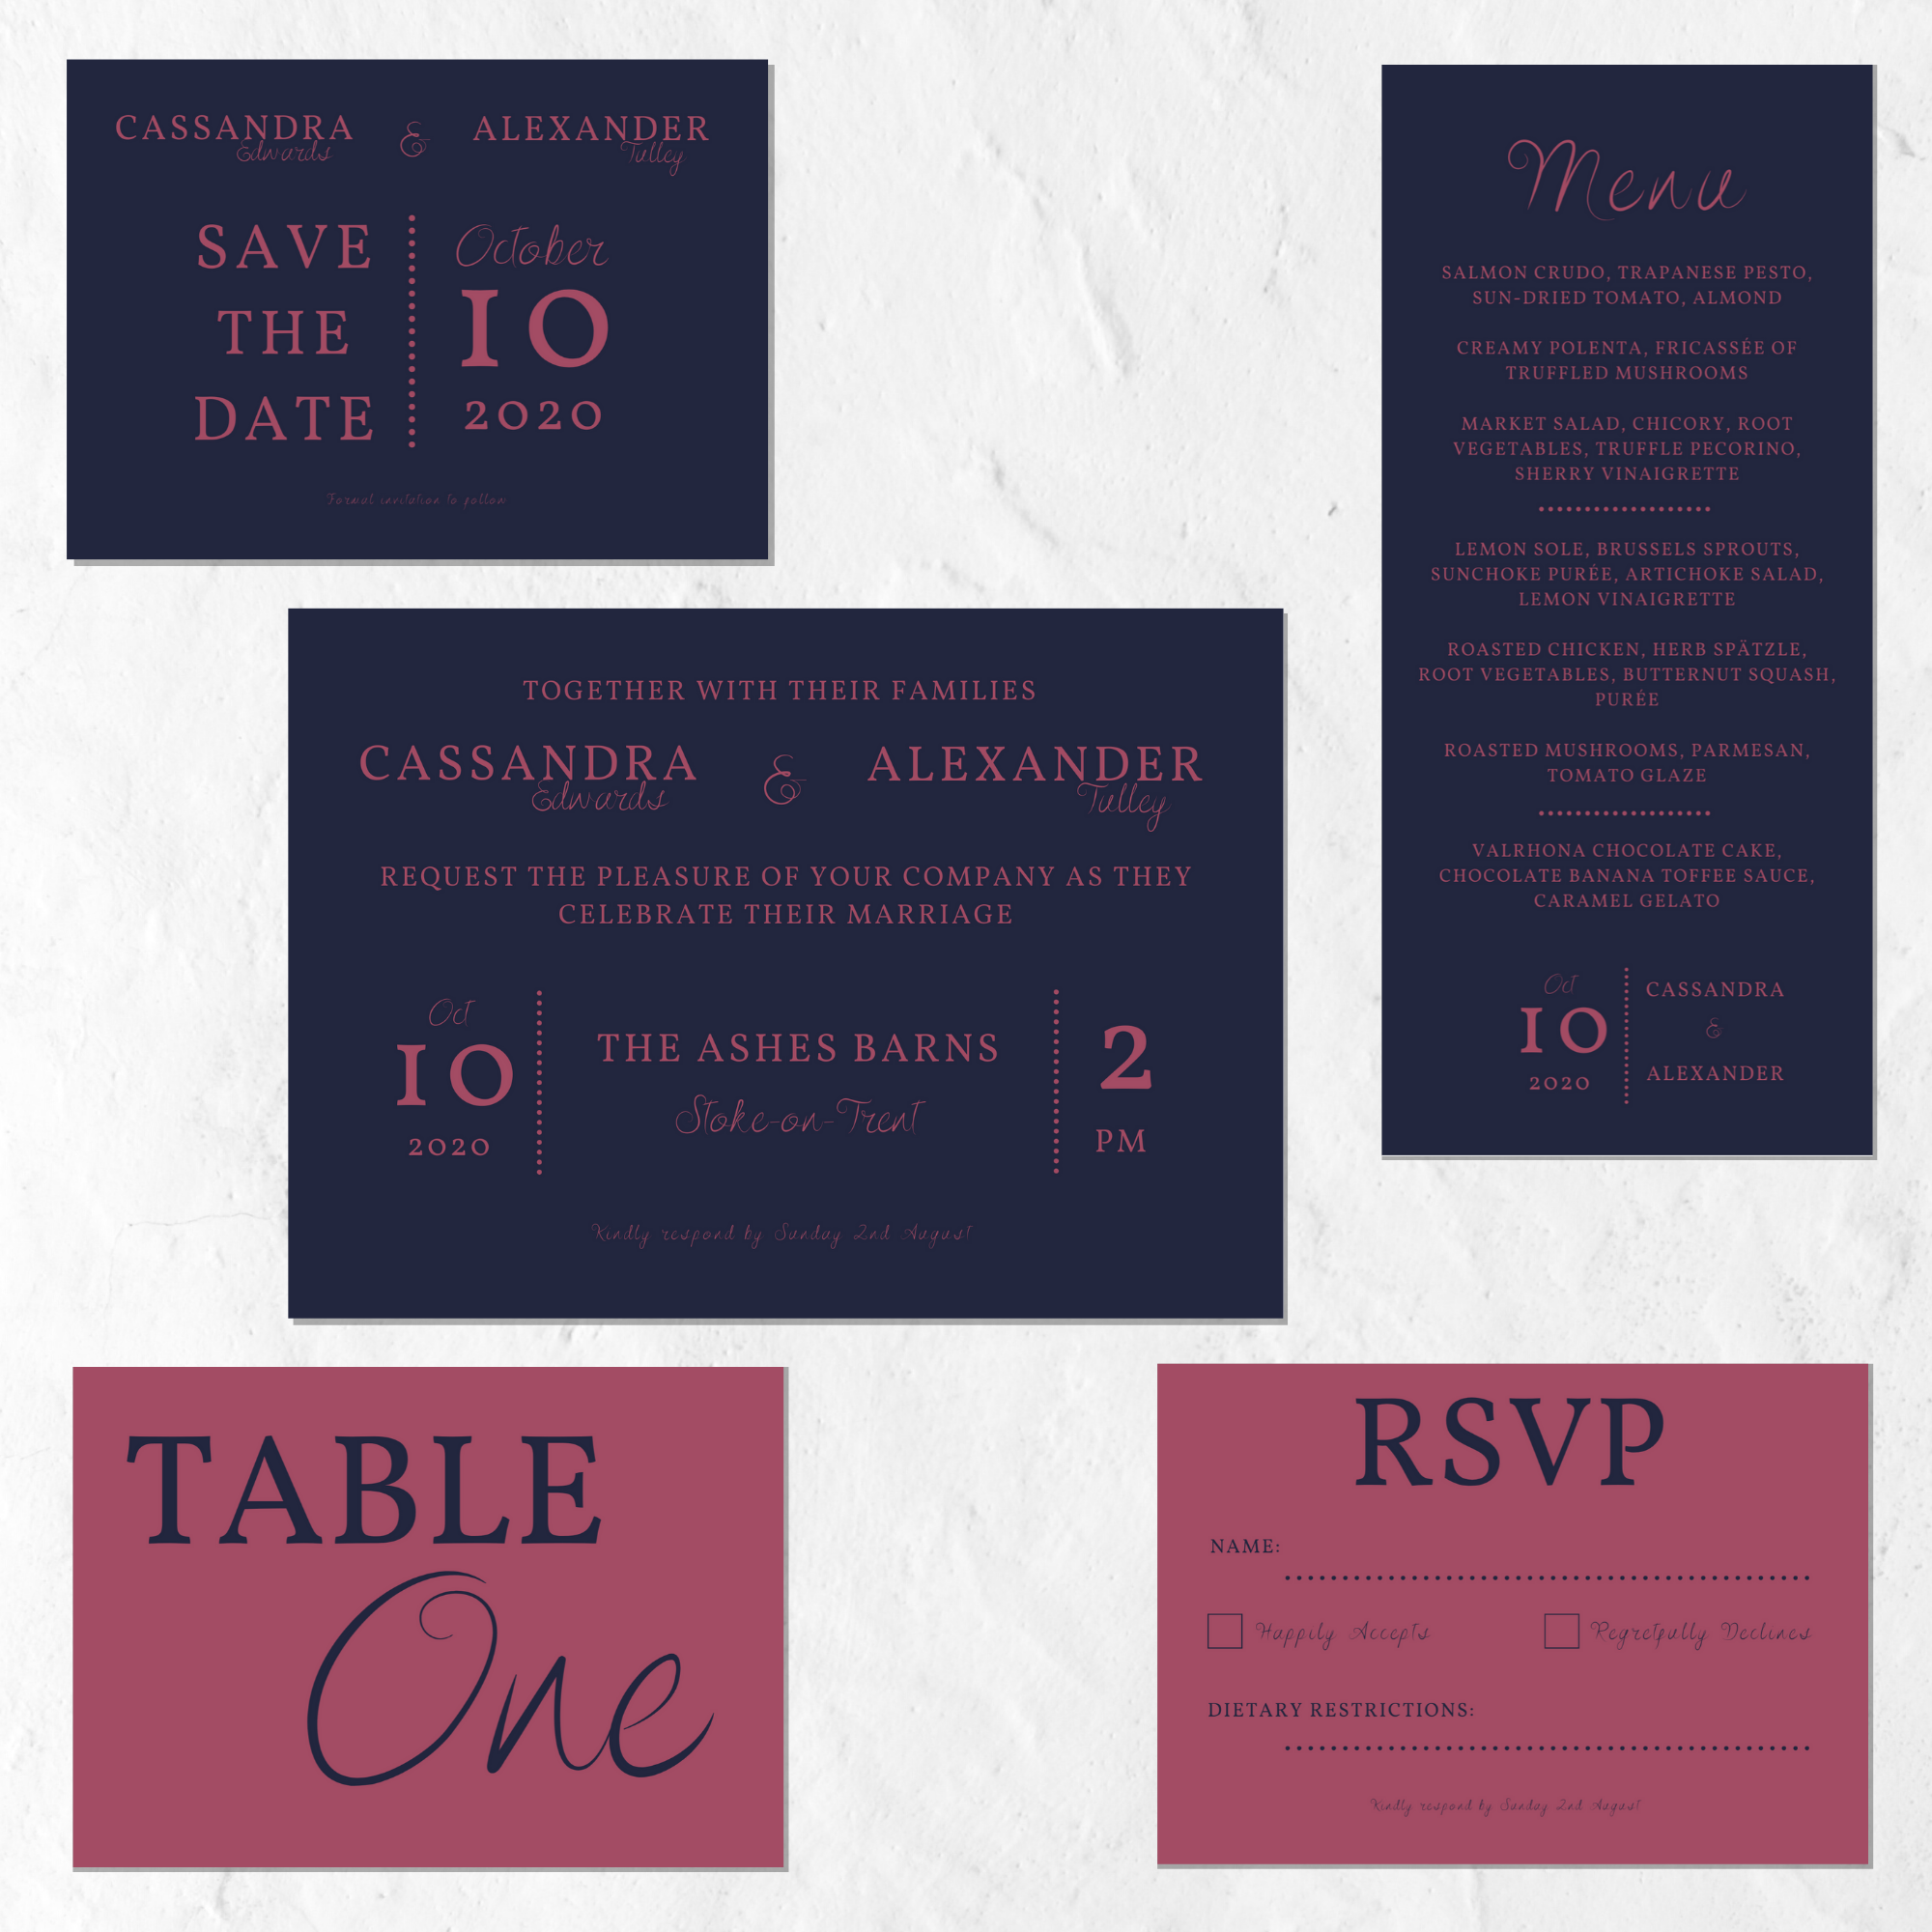 Minimalist wedding invitation set in dark pink and blue